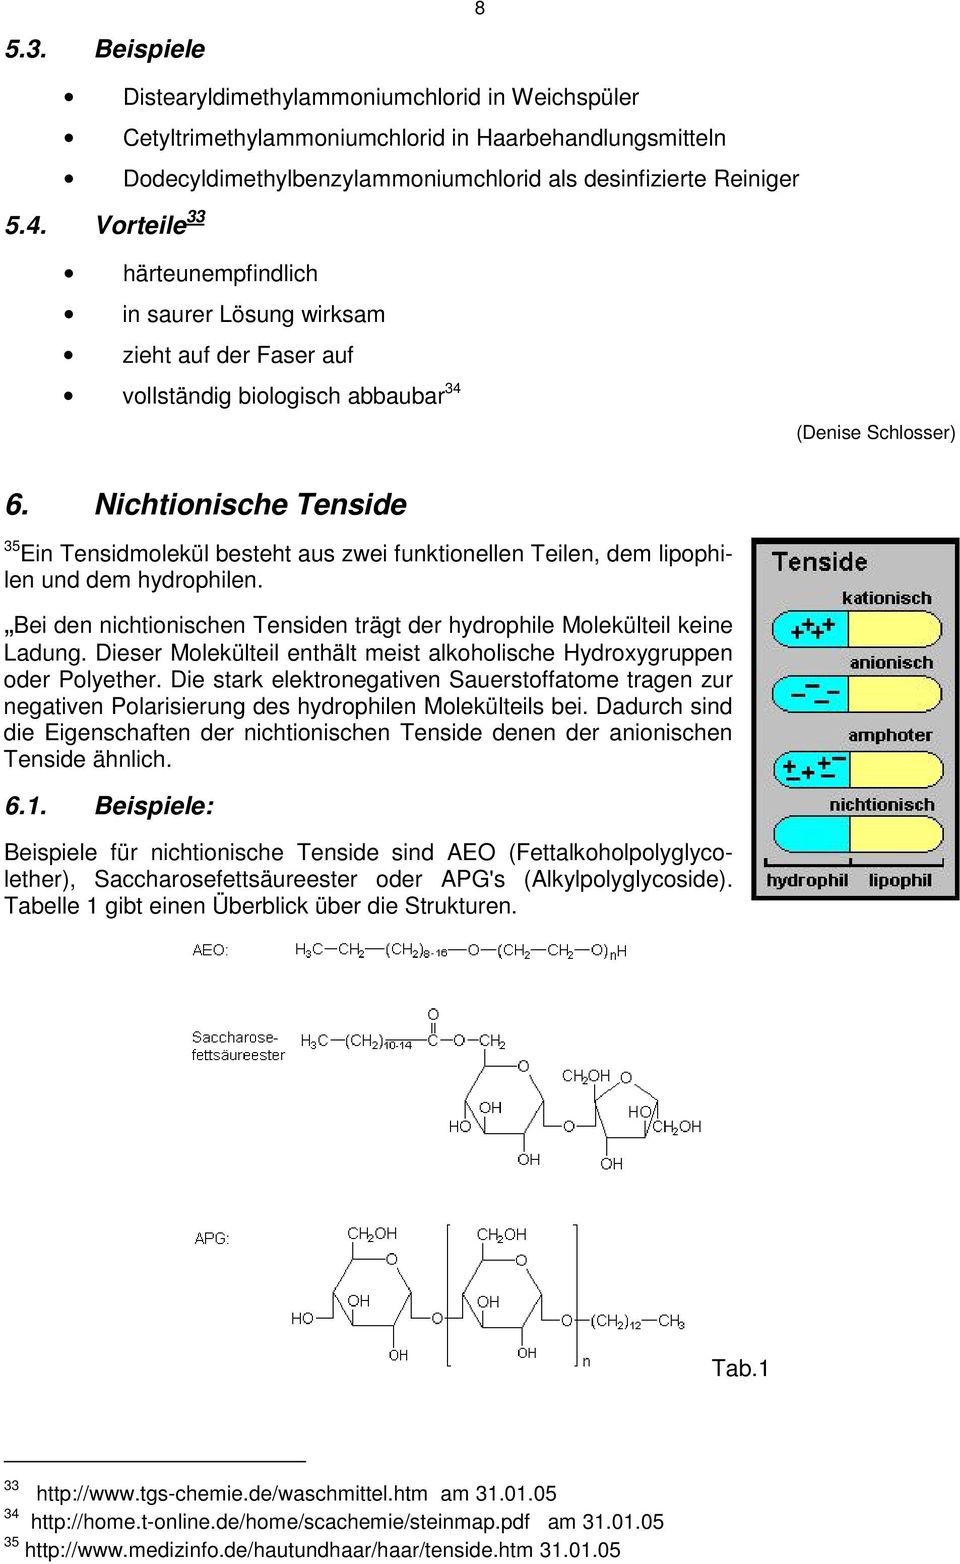 Beispiele 8 Distearyldimethylammoniumchlorid in Weichspüler Cetyltrimethylammoniumchlorid in Haarbehandlungsmitteln Dodecyldimethylbenzylammoniumchlorid als desinfizierte Reiniger 5.4.